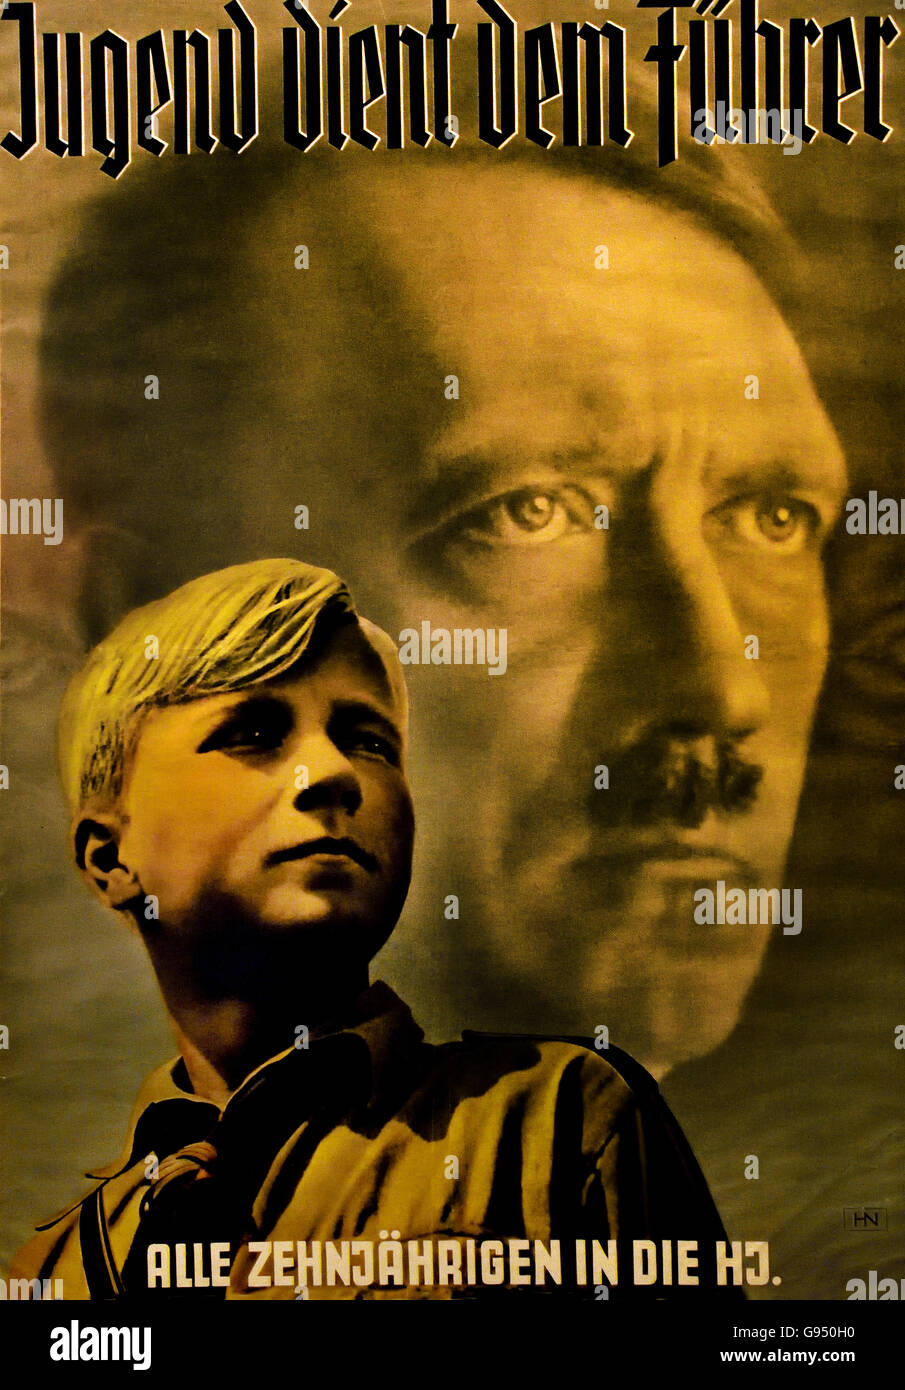 Adolf Hitler Werbe plakat für den Eintritt in die Hitler Jugend - Affiche promotionnelle pour l'entrée dans la jeunesse hitlérienne Berlin Allemagne nazie Banque D'Images